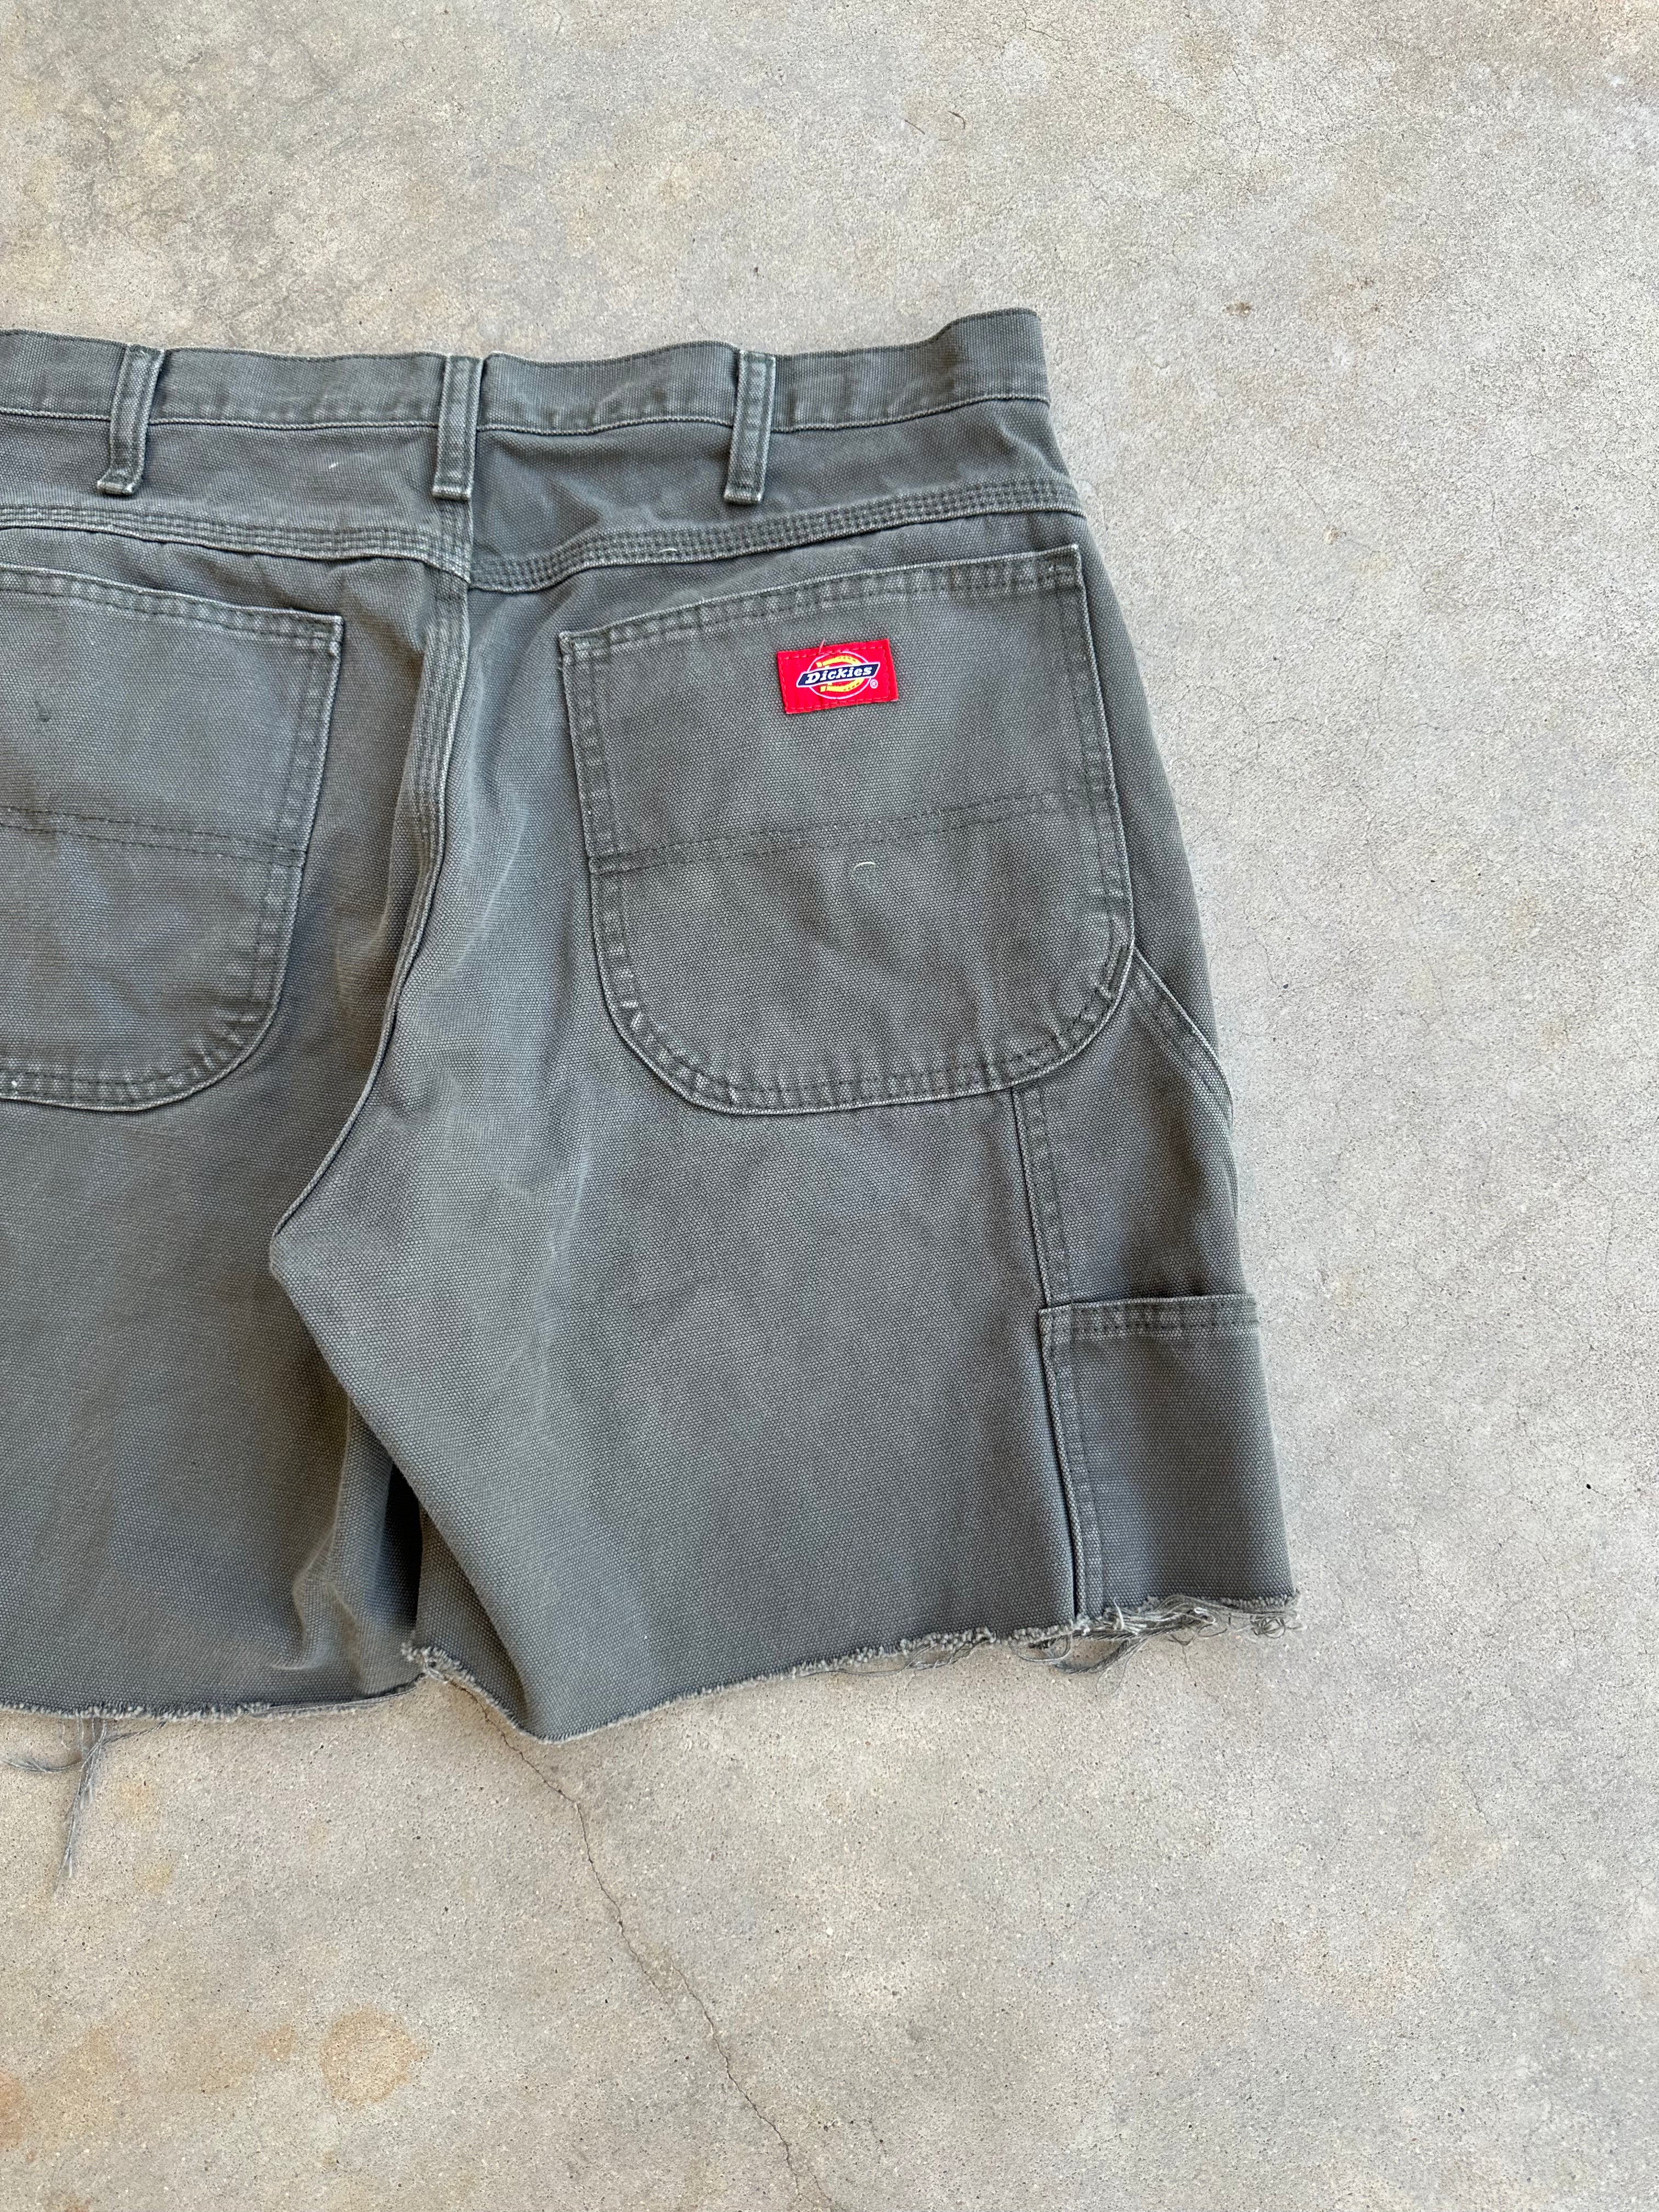 Vintage Dickies Carpenter Shorts (34"x6.5")